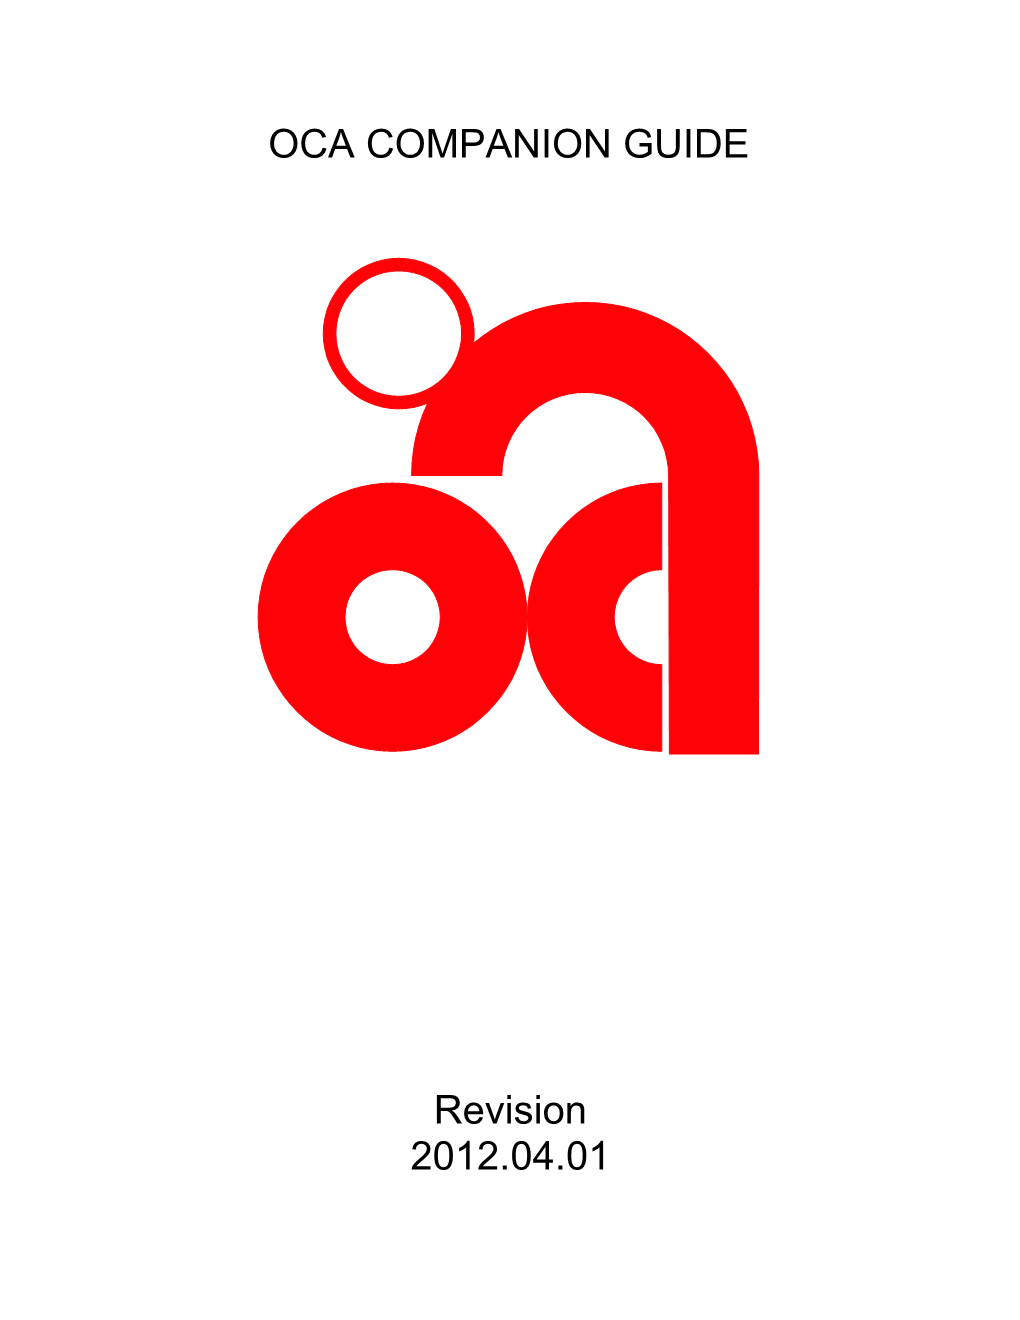 OCA COMPANION GUIDE Revision 2012.04.01